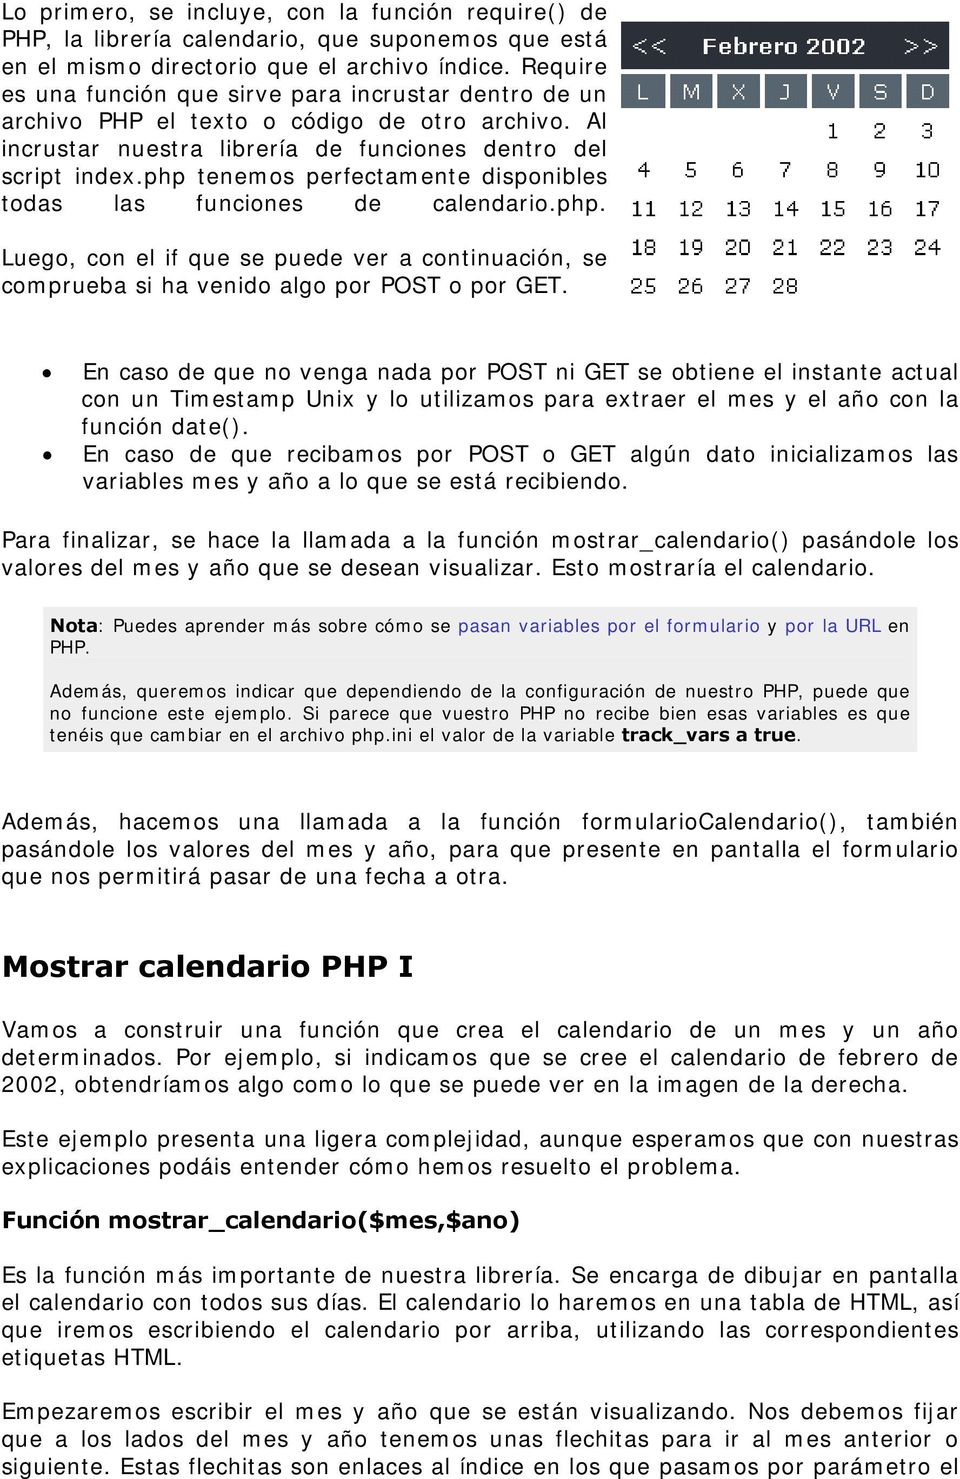 php tenemos perfectamente disponibles todas las funciones de calendario.php. Luego, con el if que se puede ver a continuación, se comprueba si ha venido algo por POST o por GET.